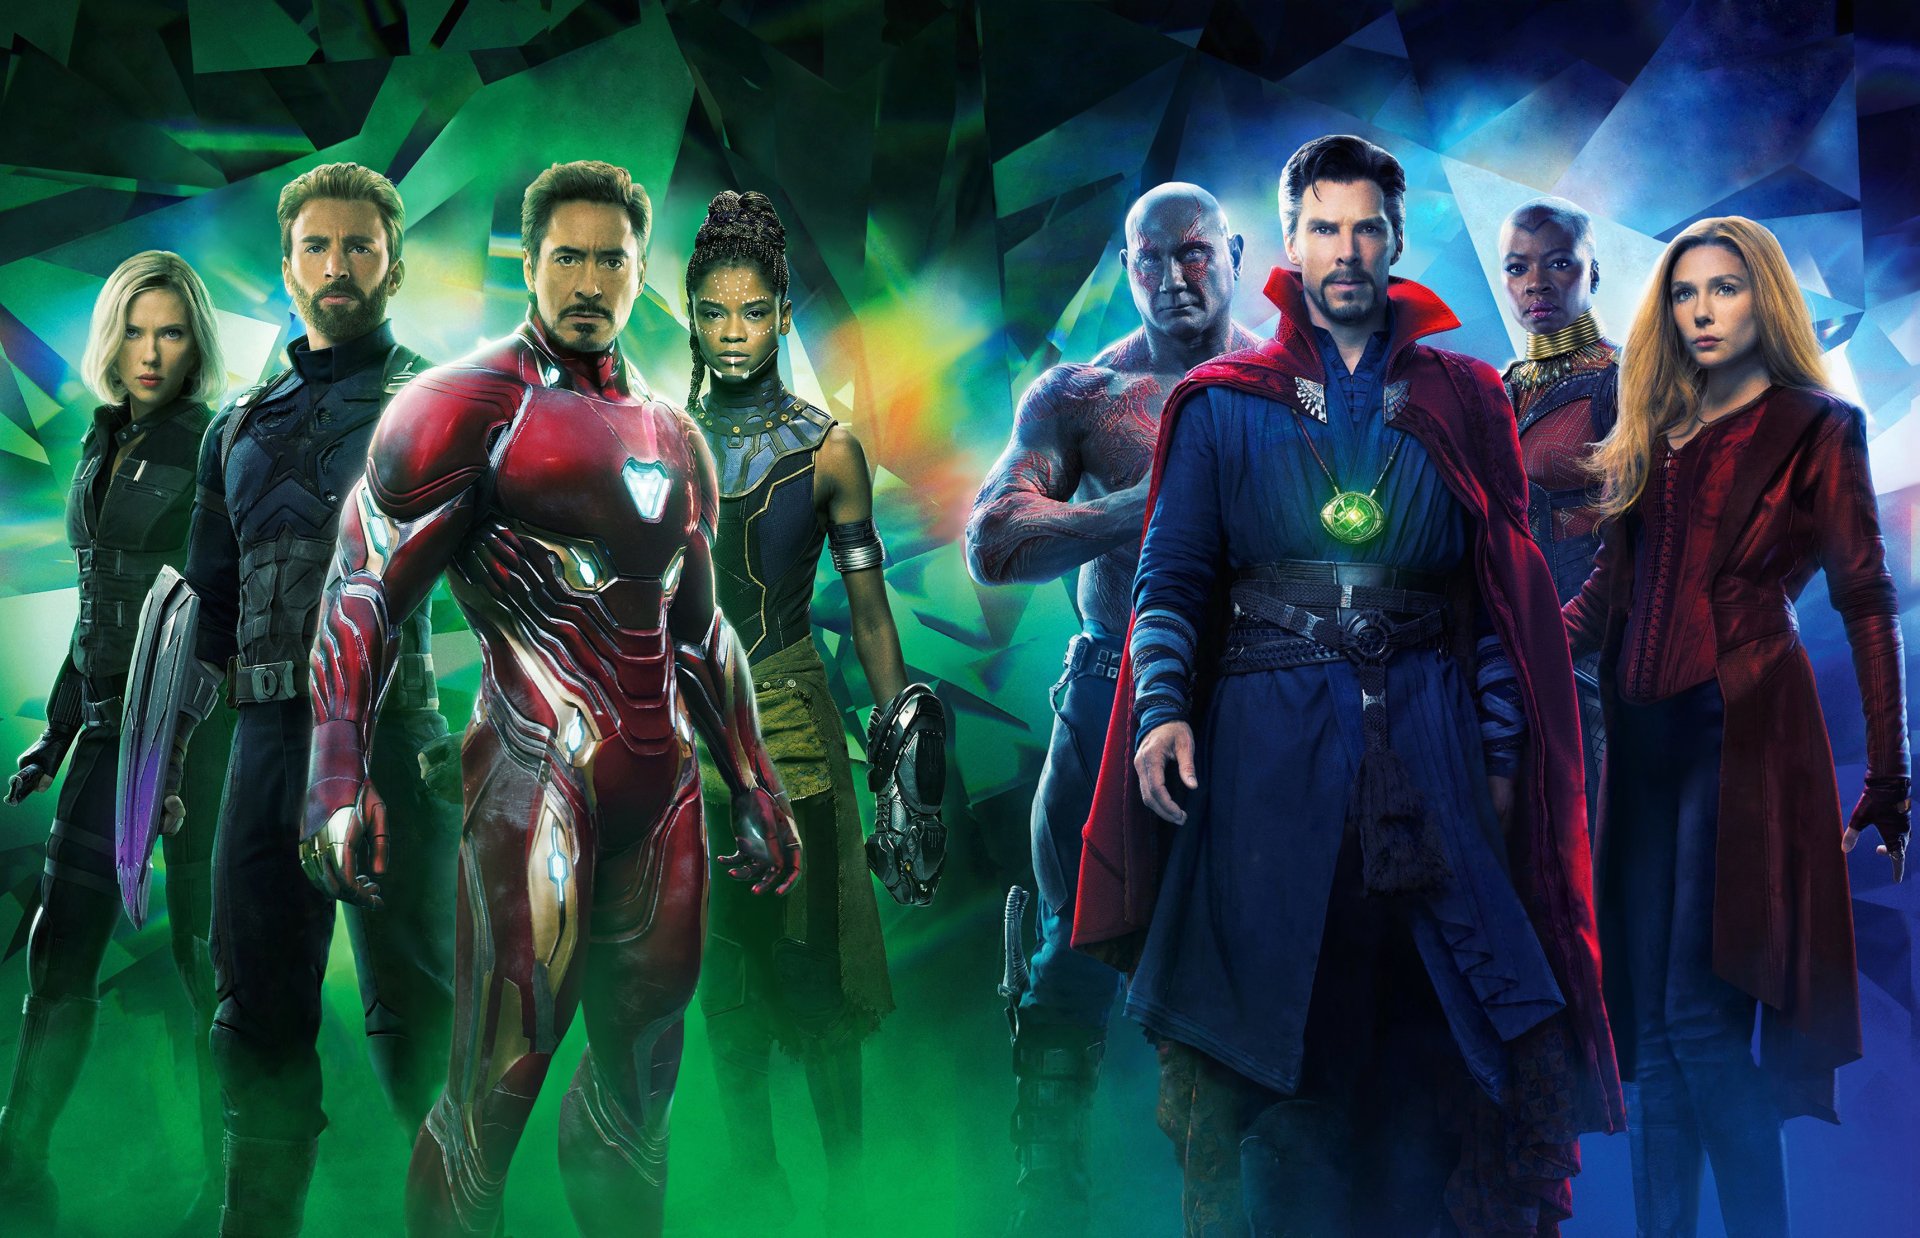 Fondos de Los Vengadores Infinity War, Wallpapers Avengers 